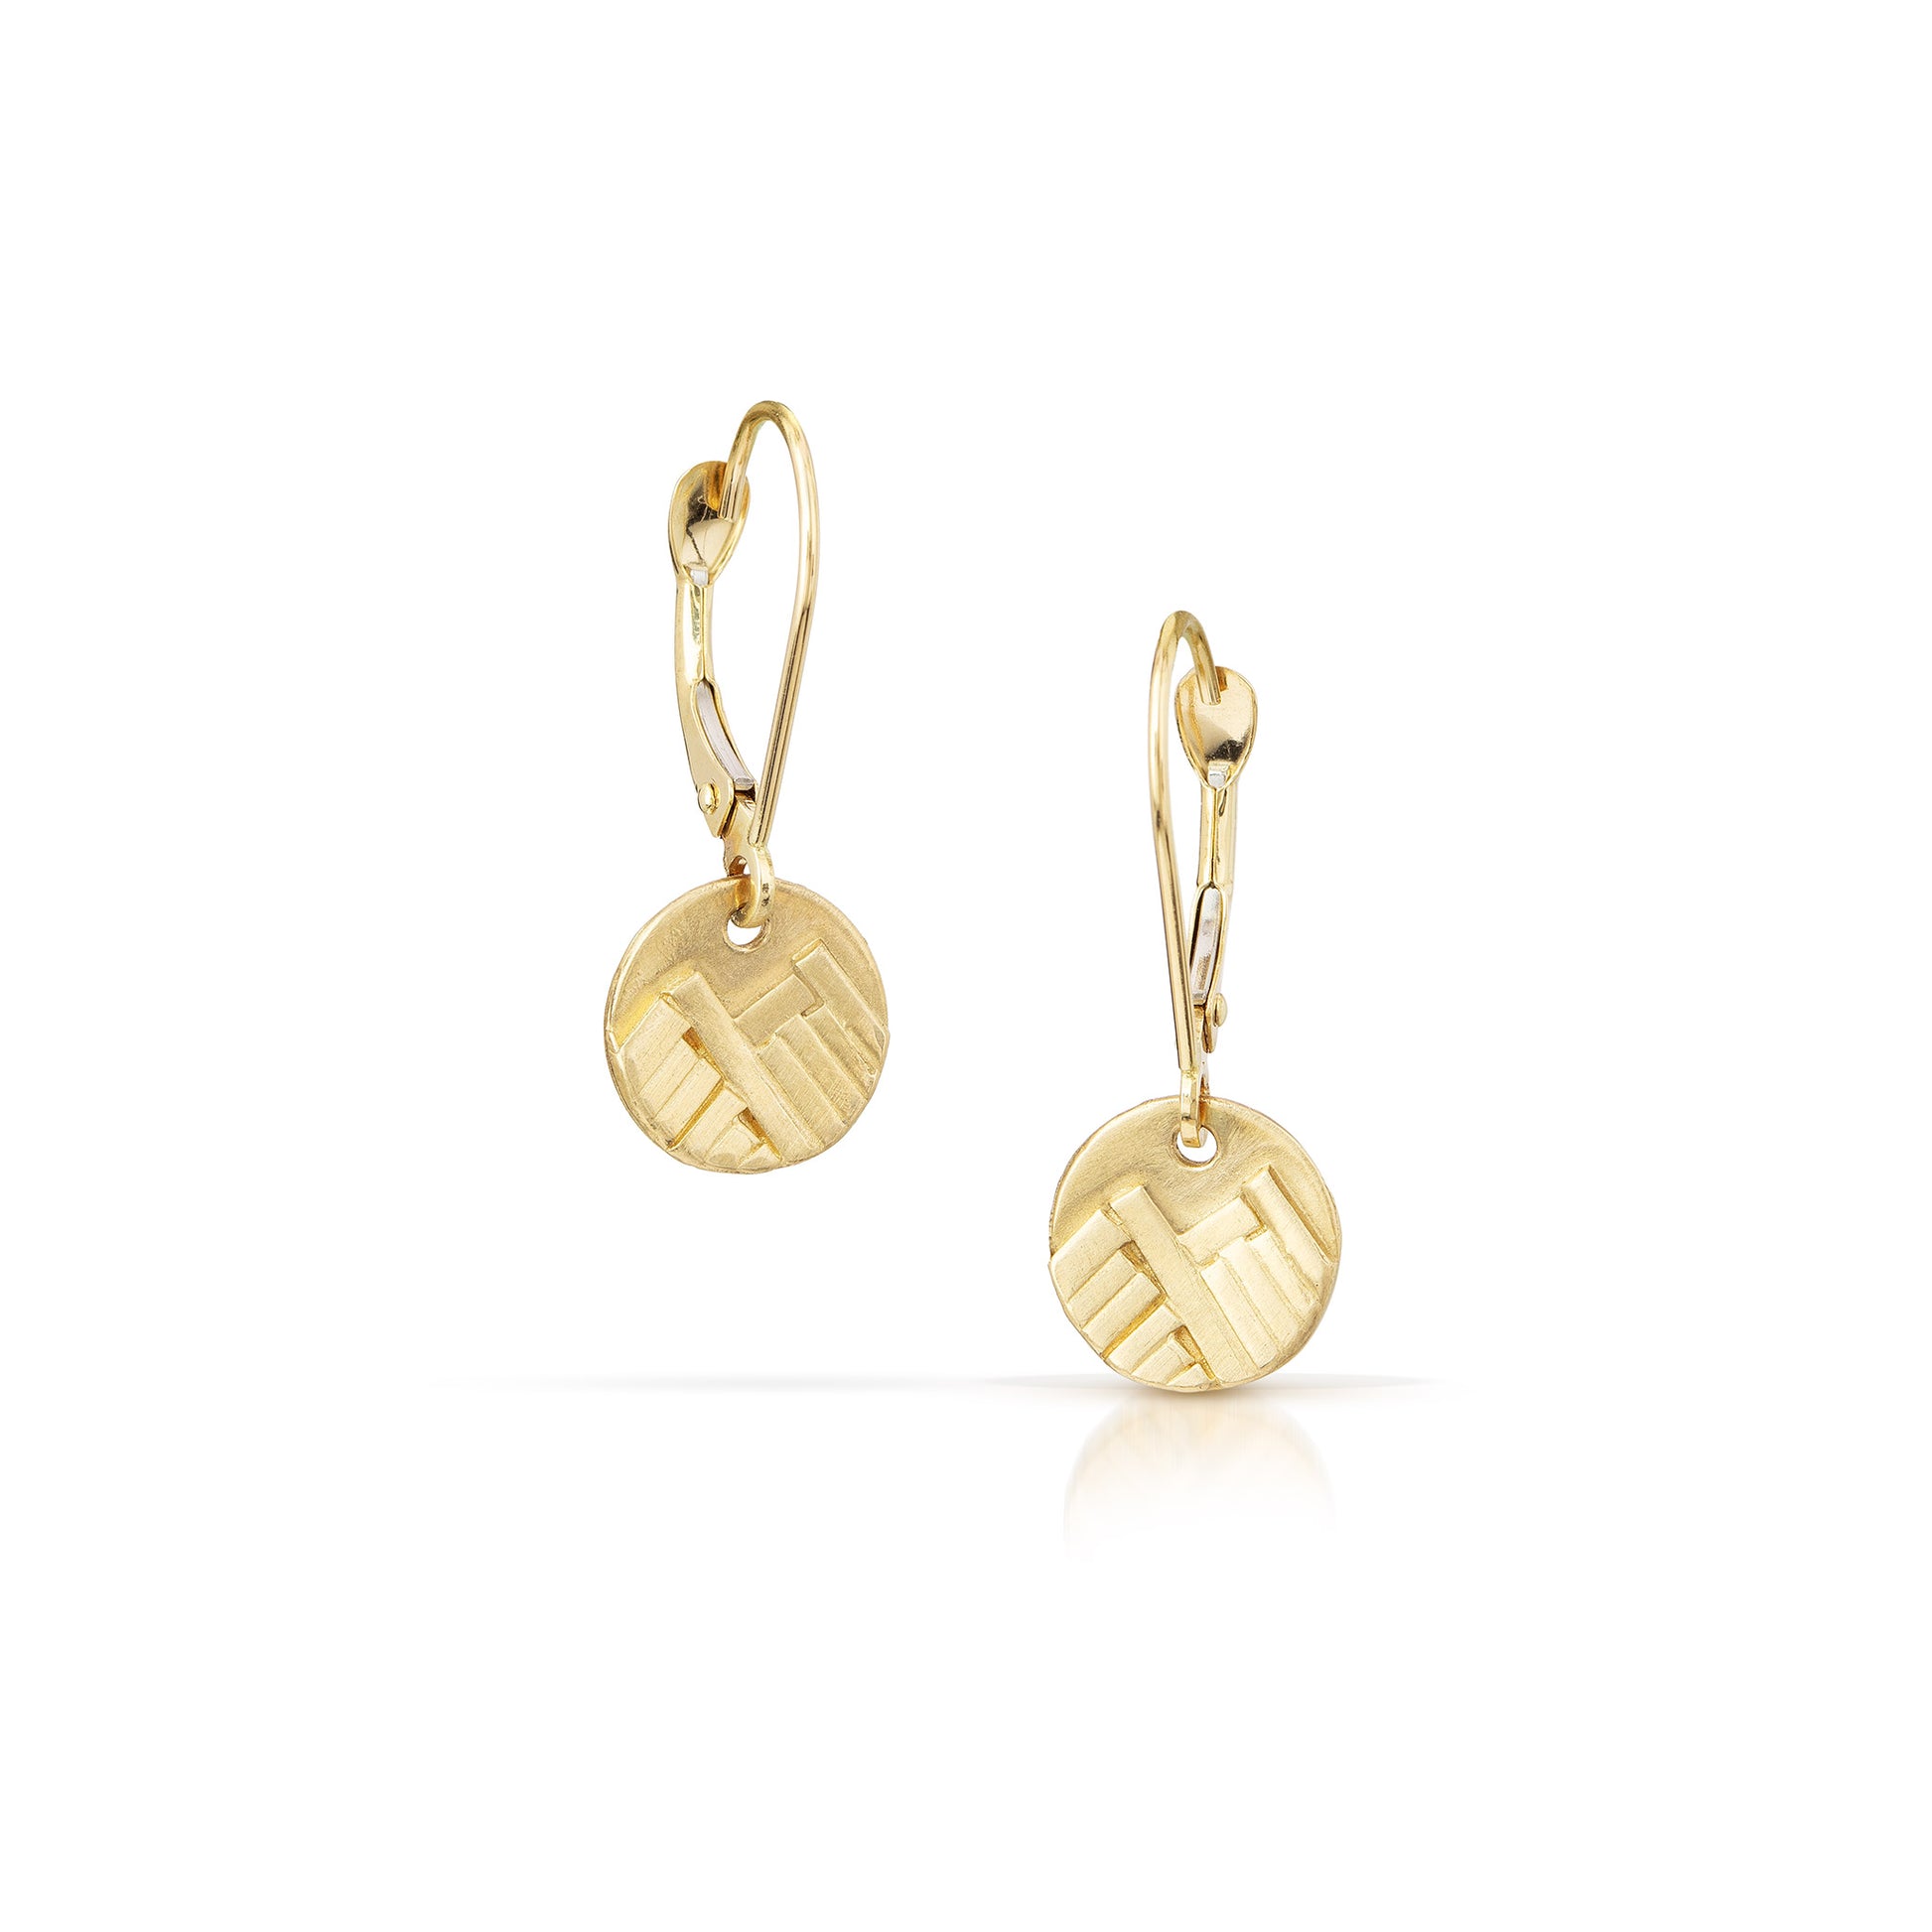 14K gold mountain charm earrings by Jen Lesea Designs